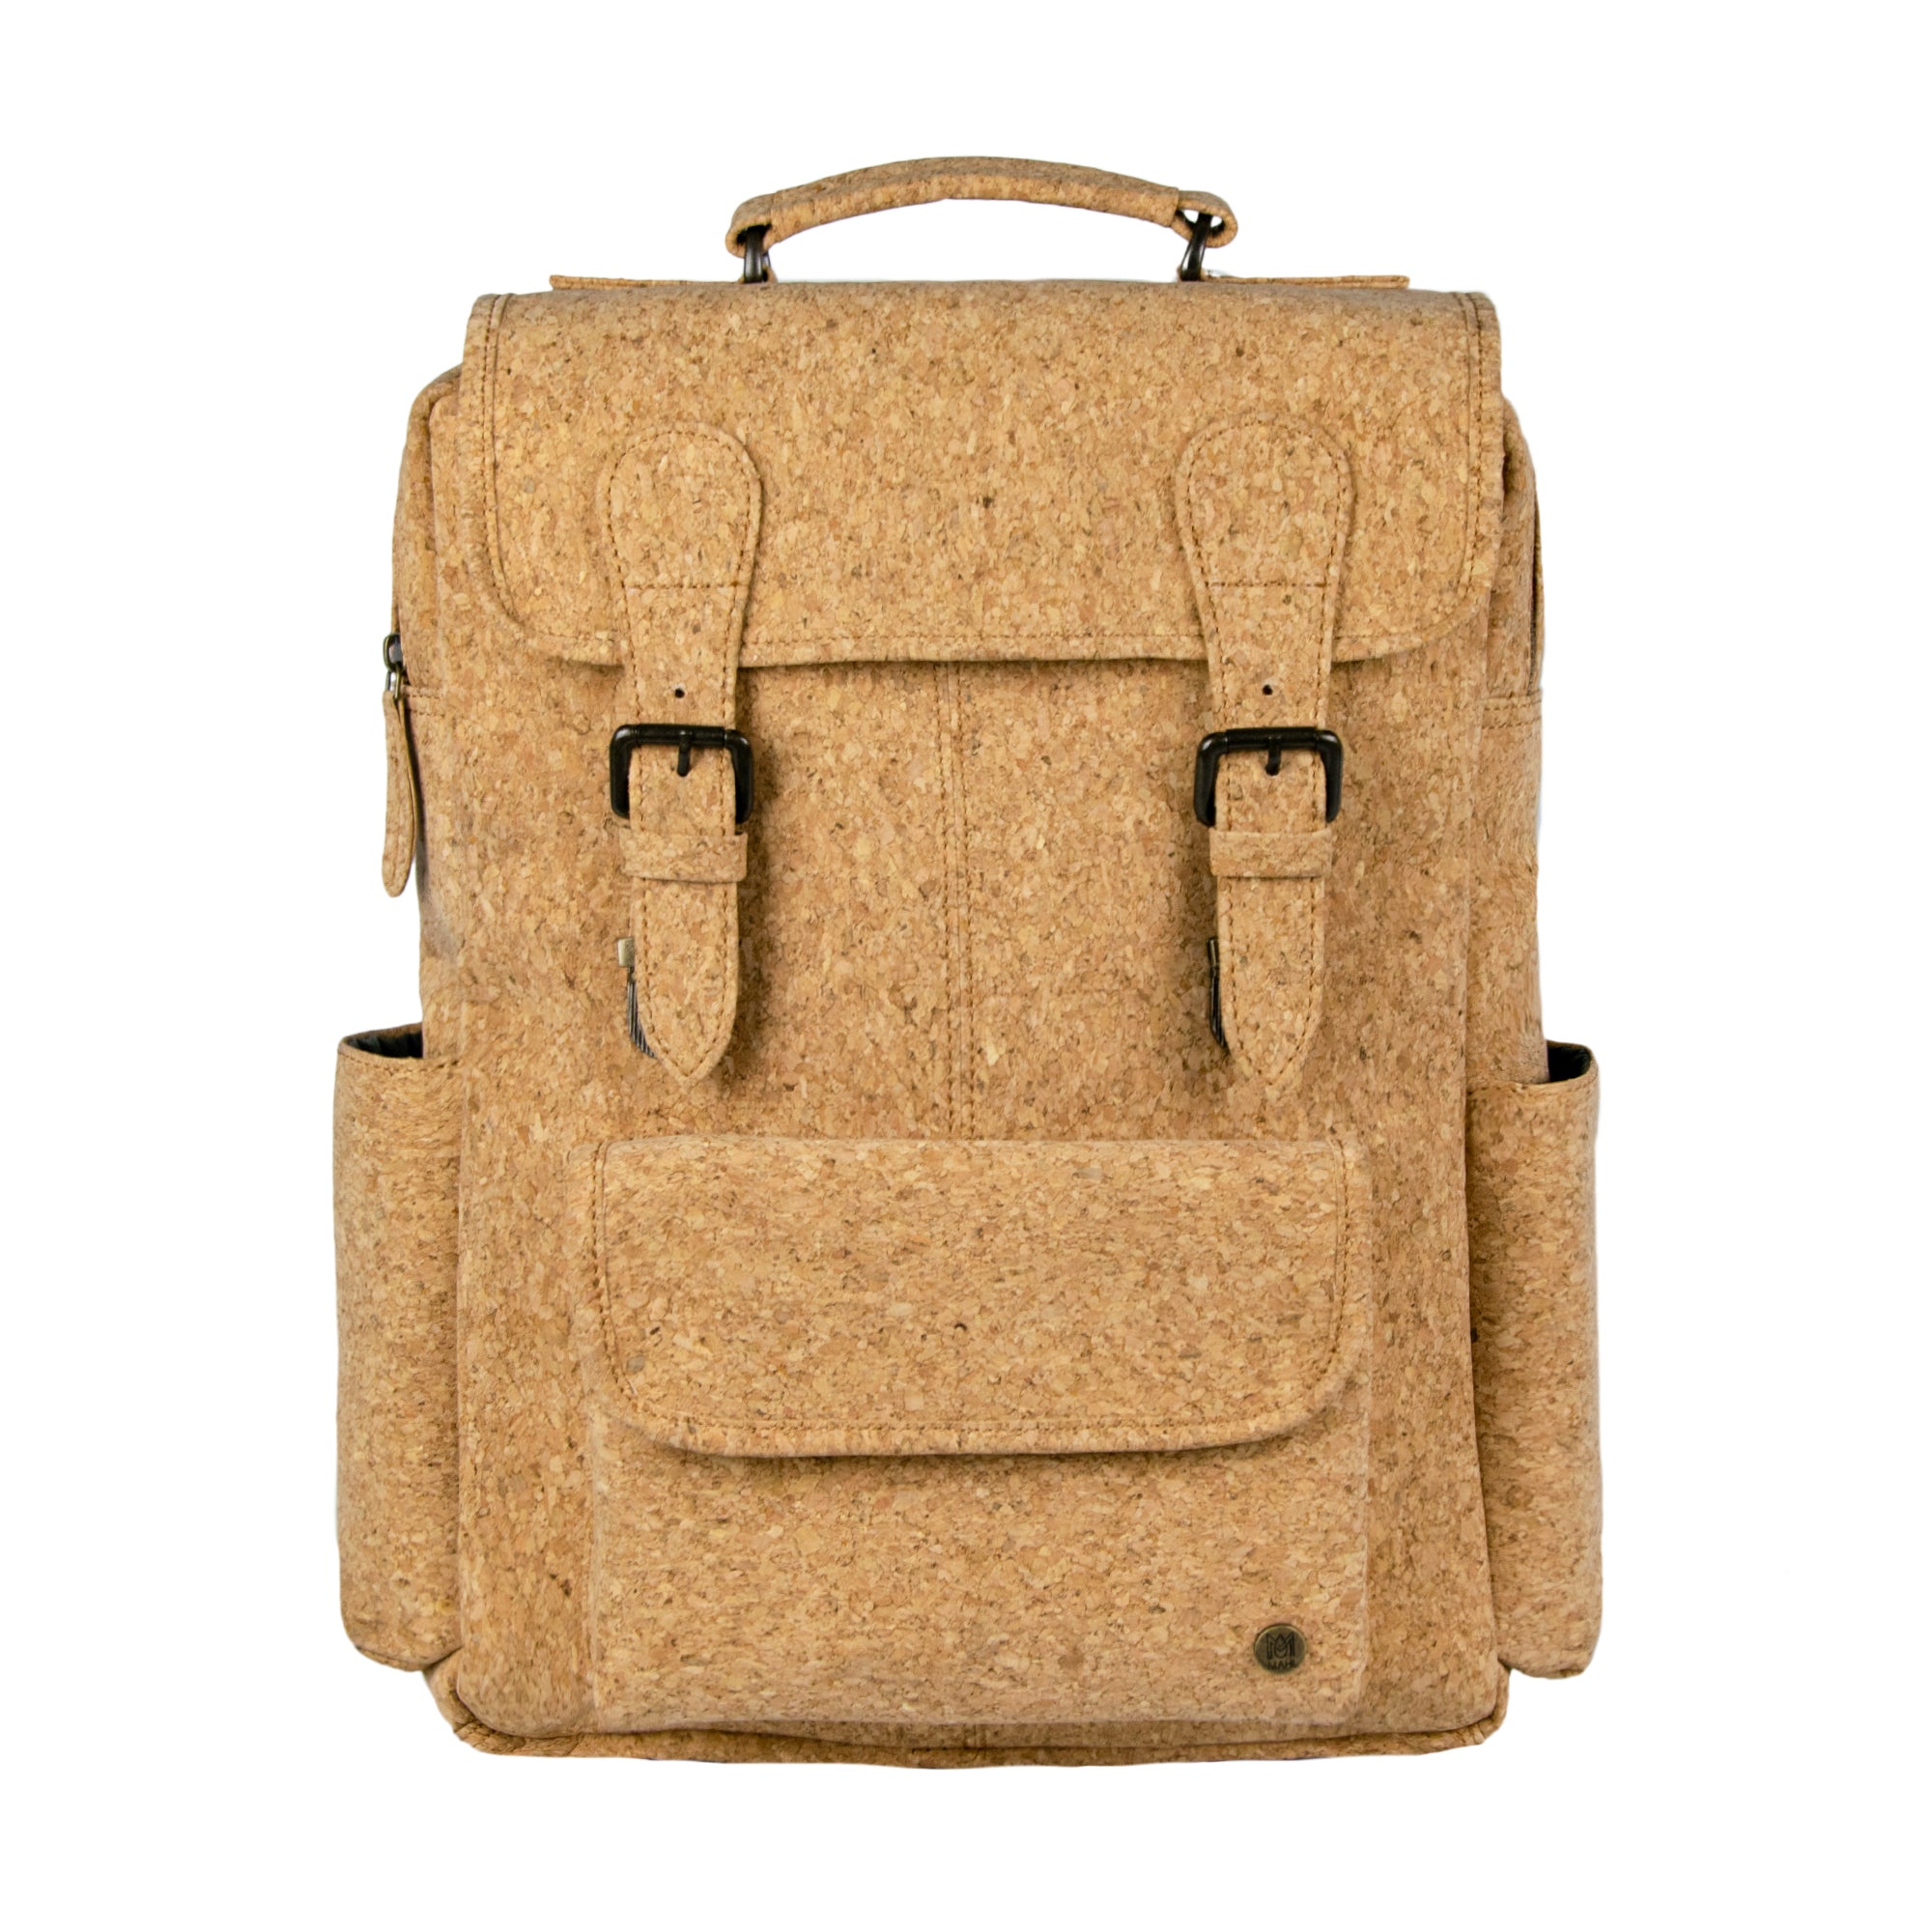 Women's Natural Cork Vegan Handbag BAGD-354 - B